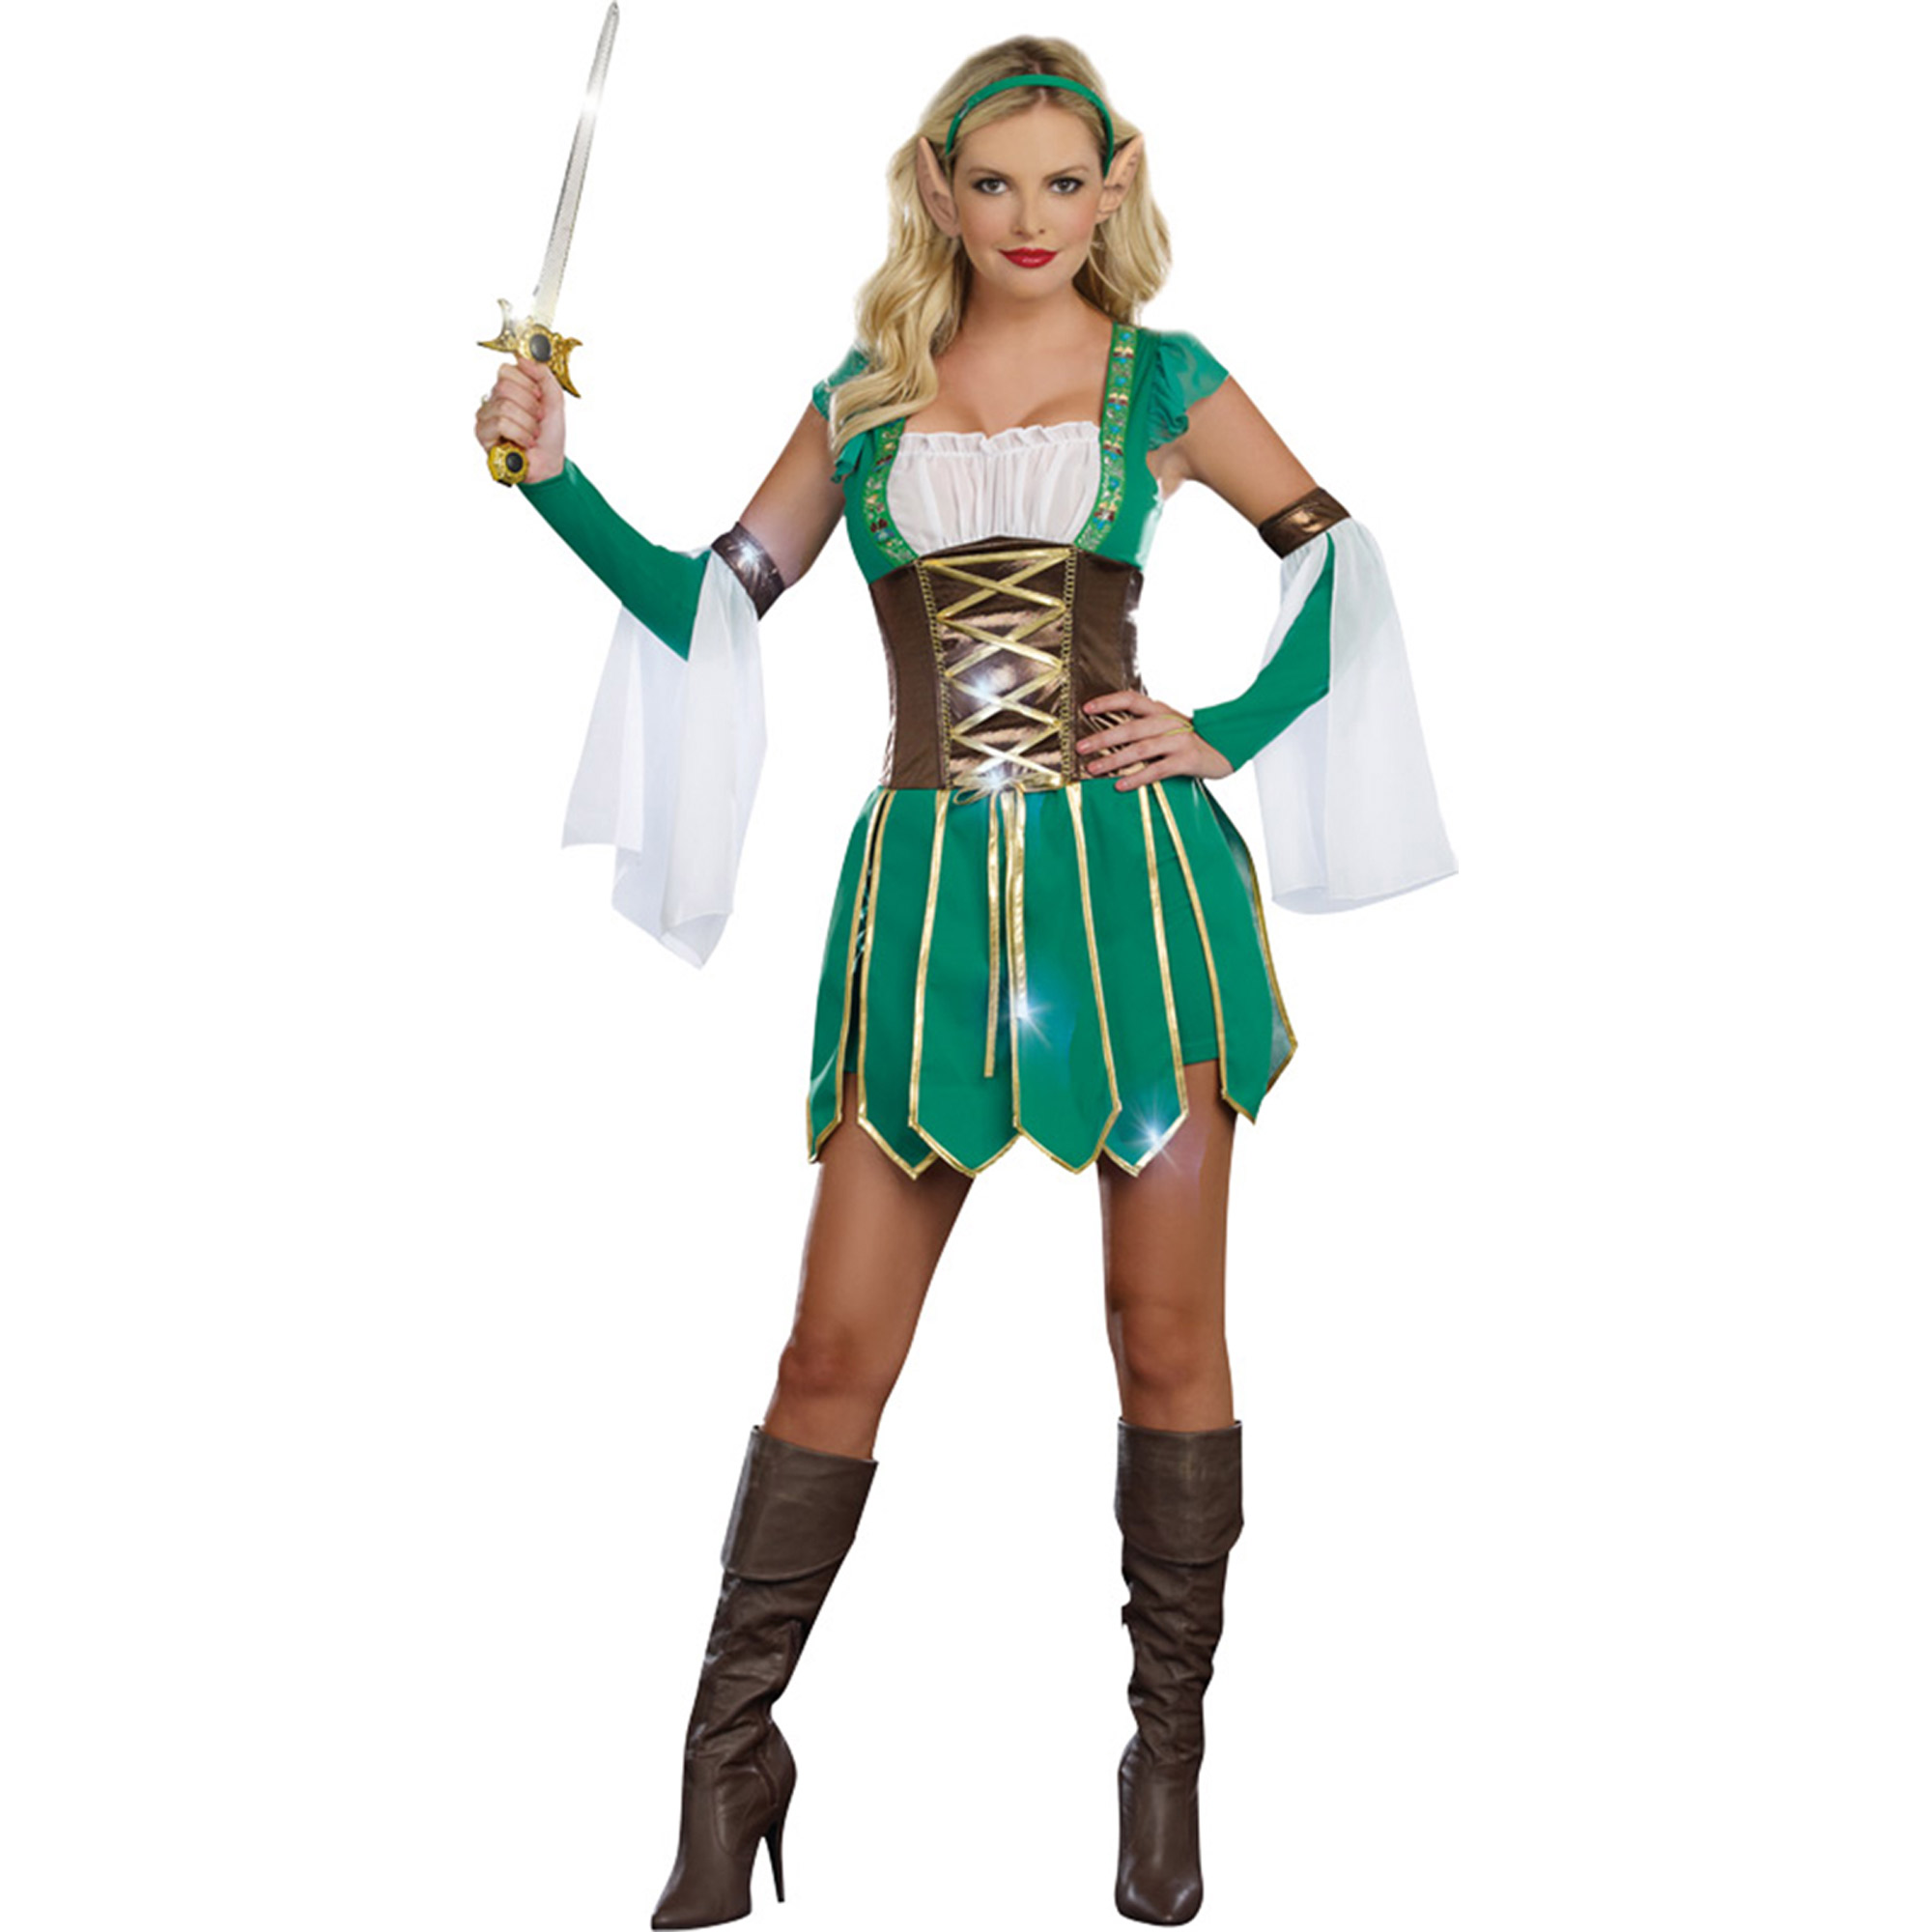 Halloween costume elf keebler Keebler Elf